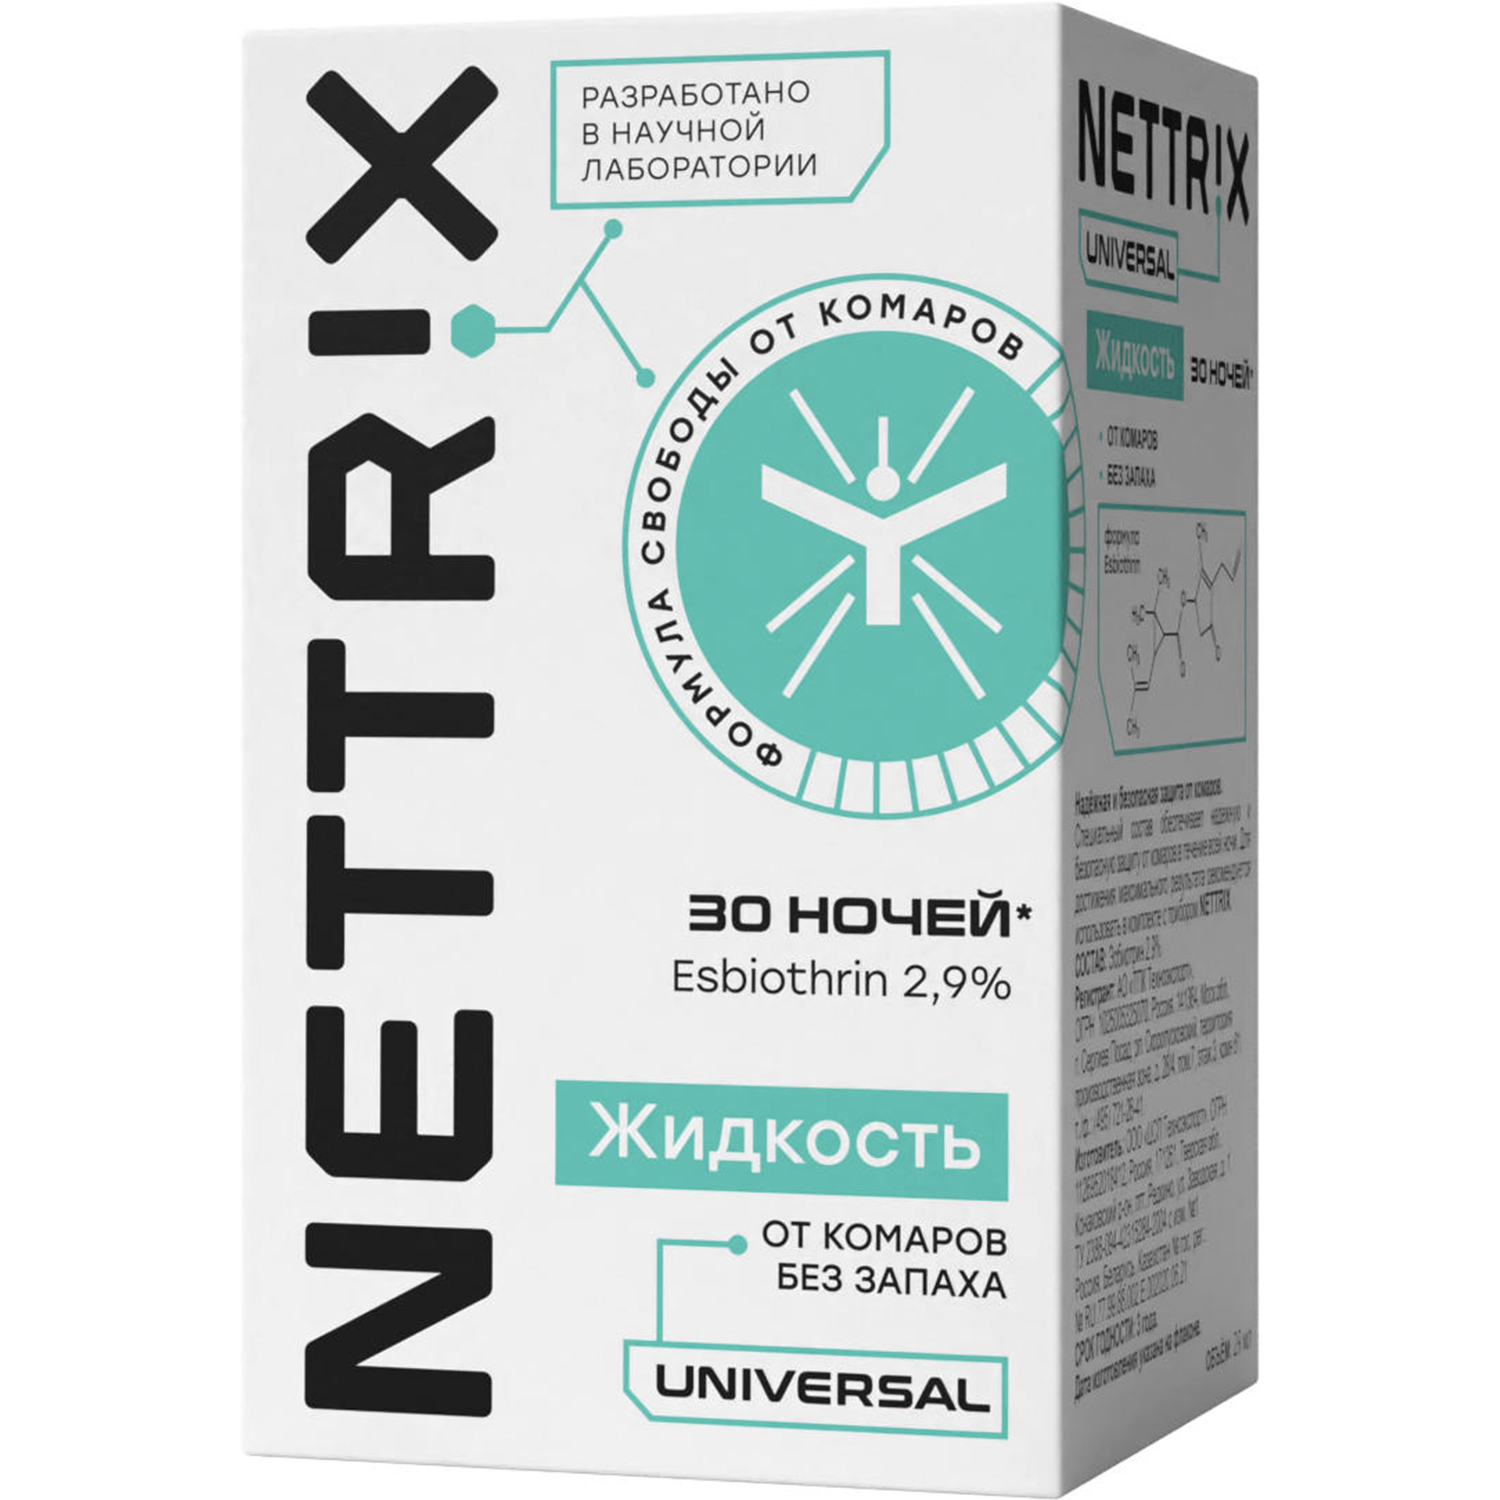 Жидкость от комаров NETTRIX Universal 30 ночей - фото 1